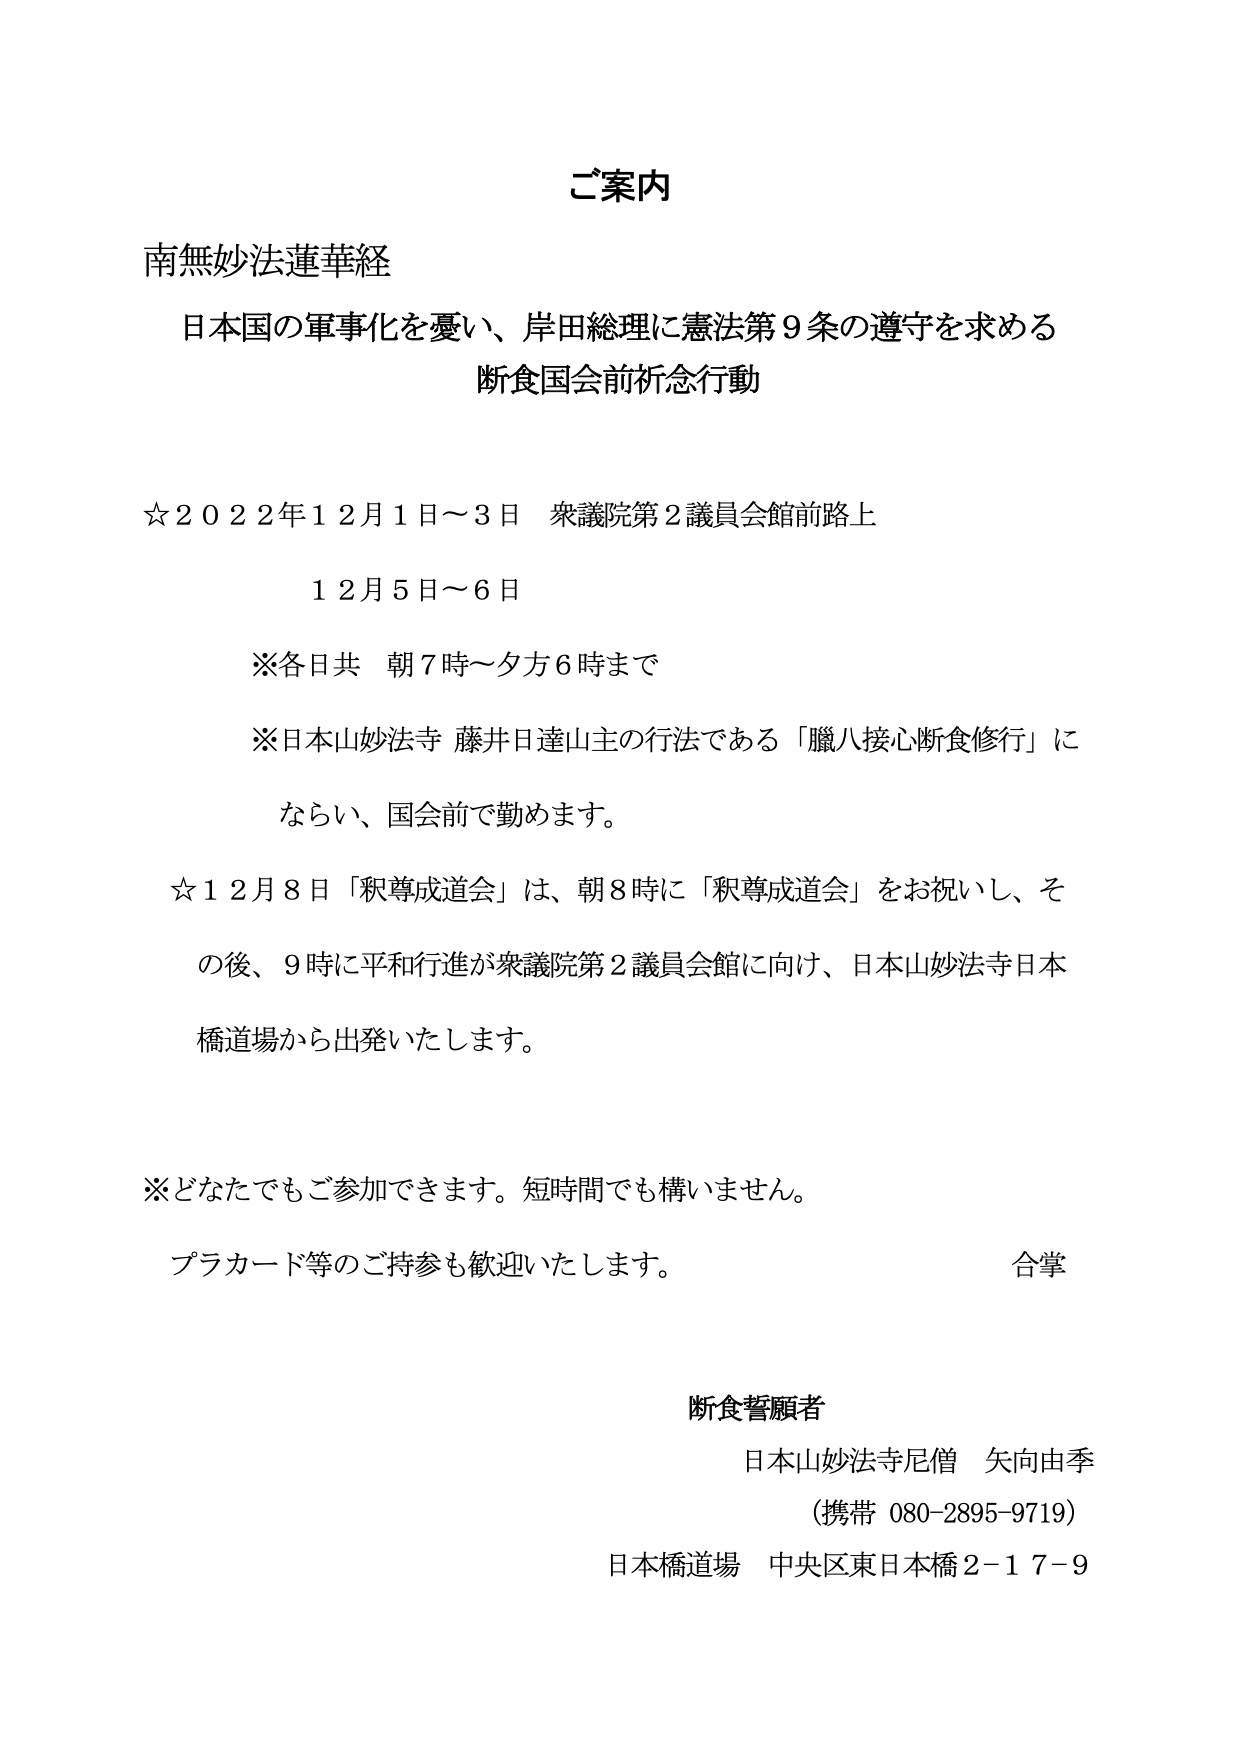 日本国の軍事化を憂い、岸田総理に憲法第9条の遵守をもとめる　断食国会前祈念行動